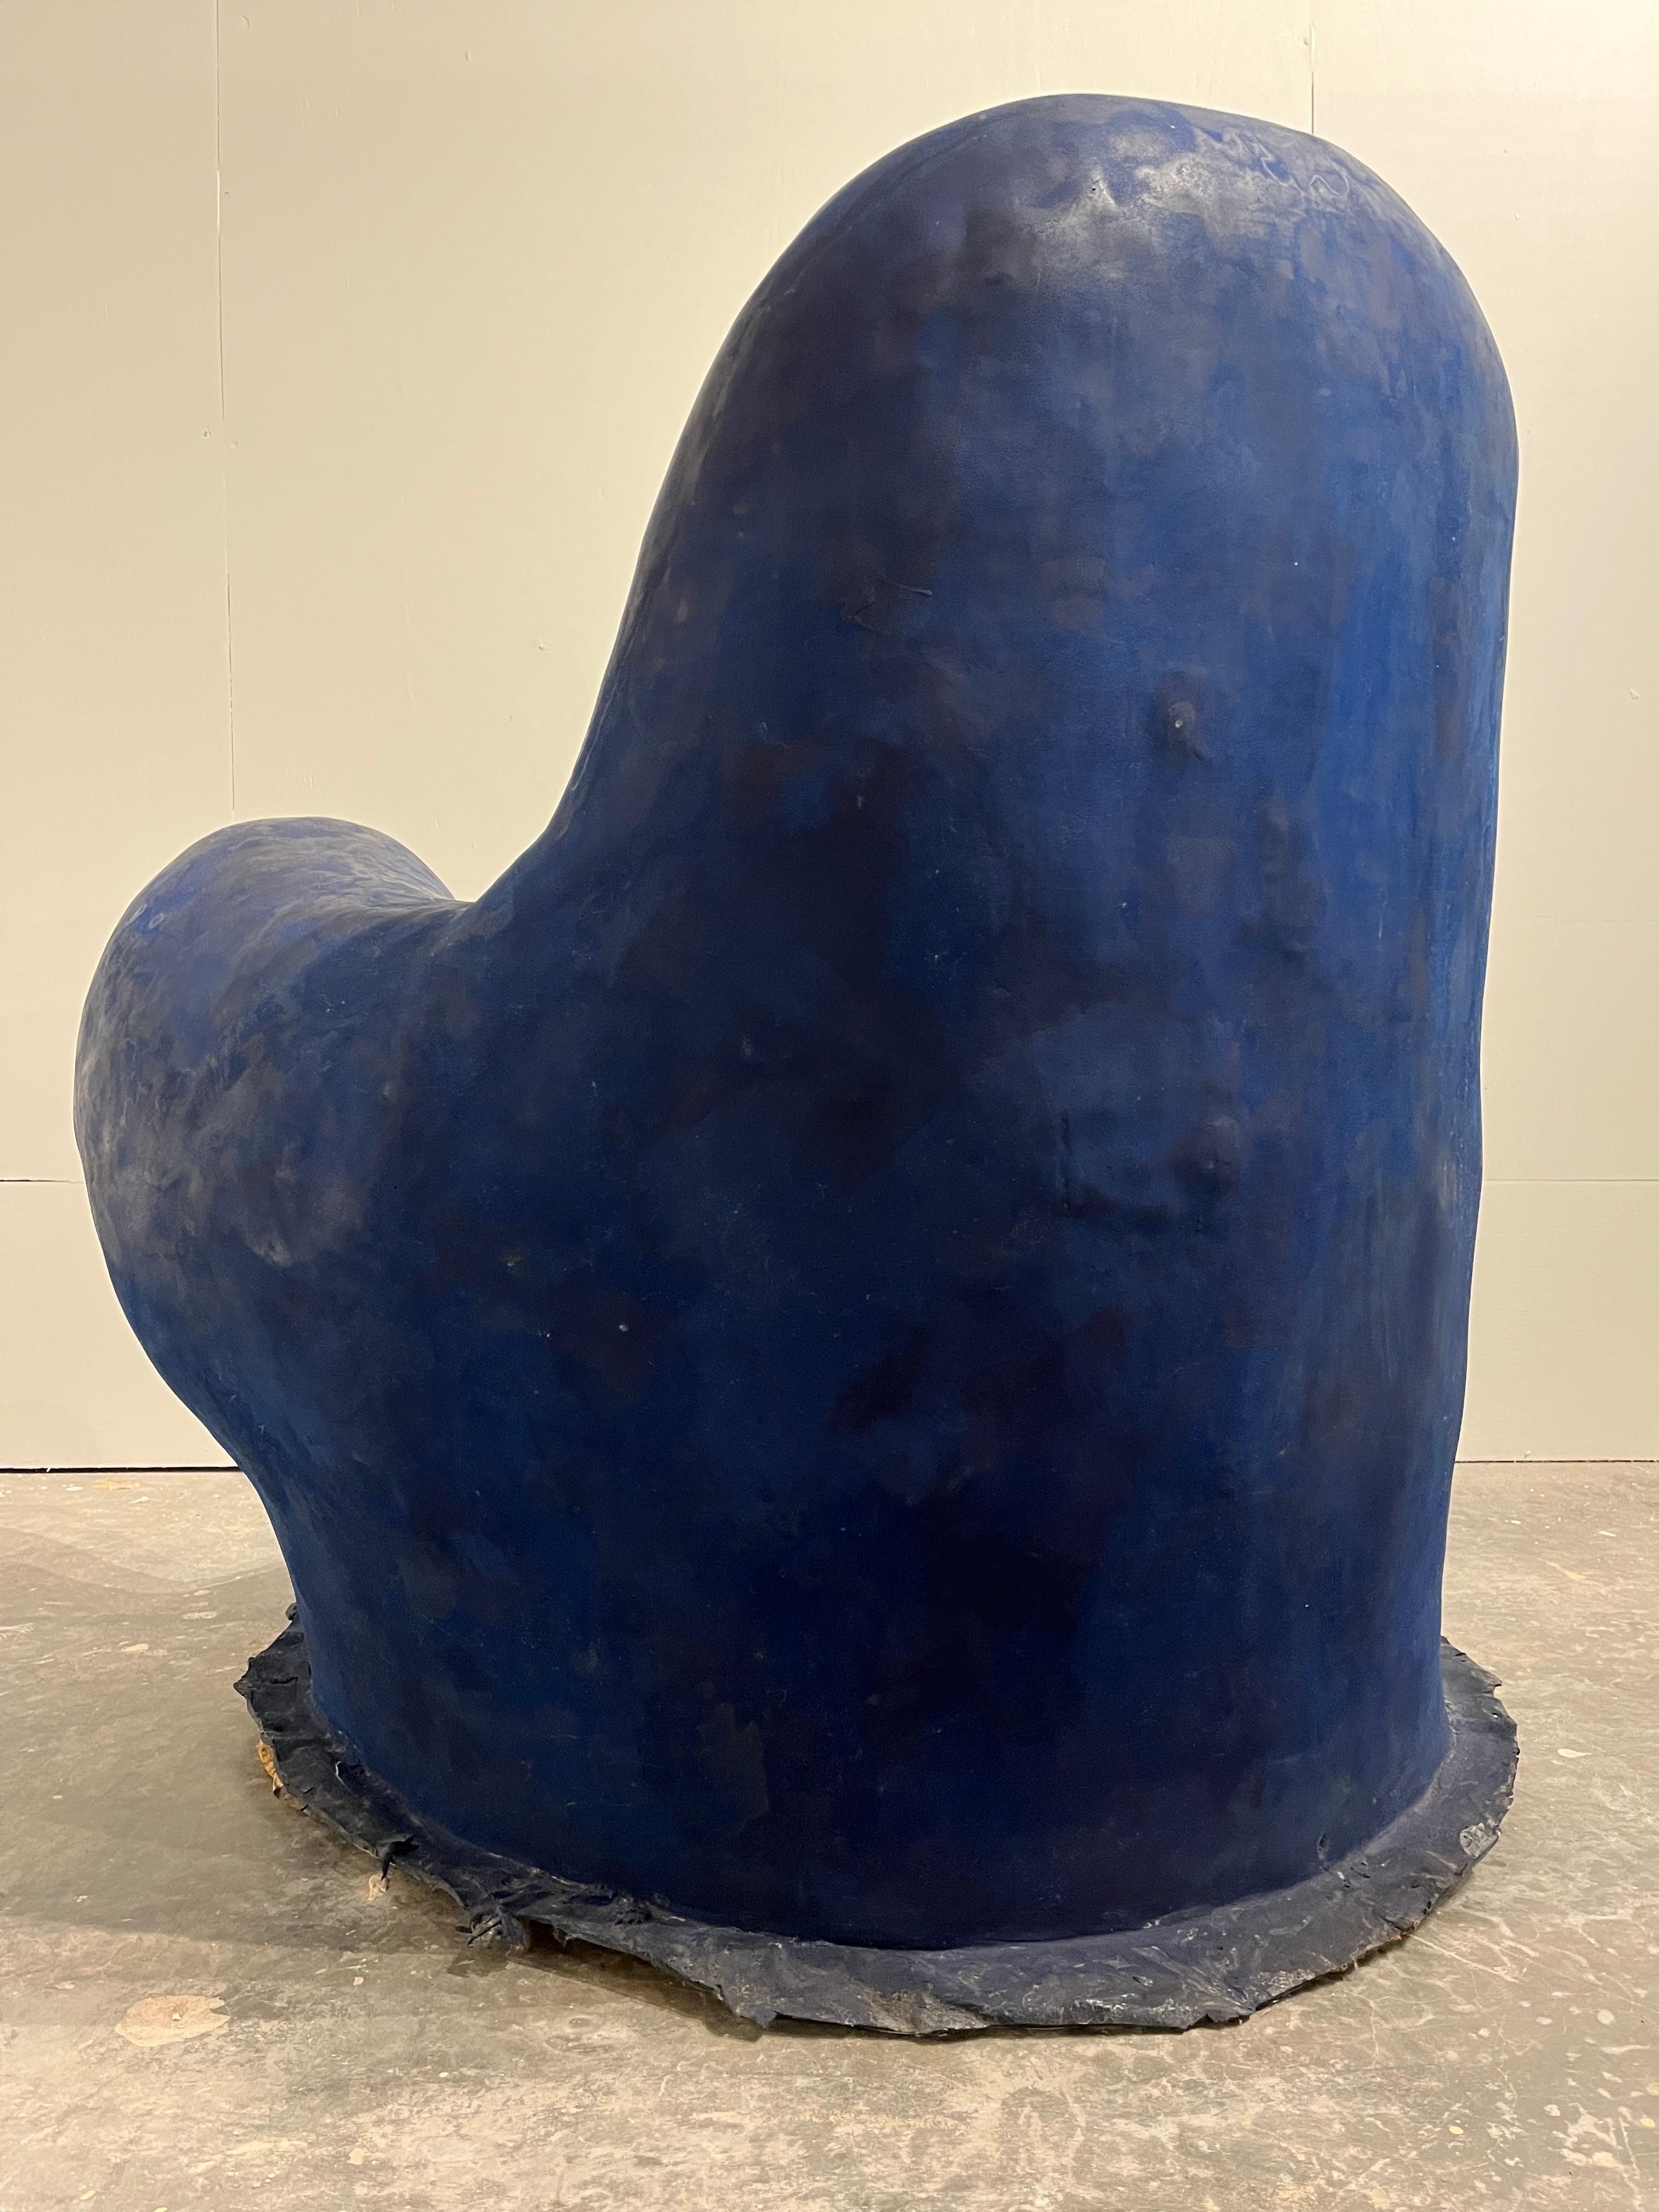 Louis Durot French Post War Contemporary Artist Blue Polymer Armchair Sculpture 1